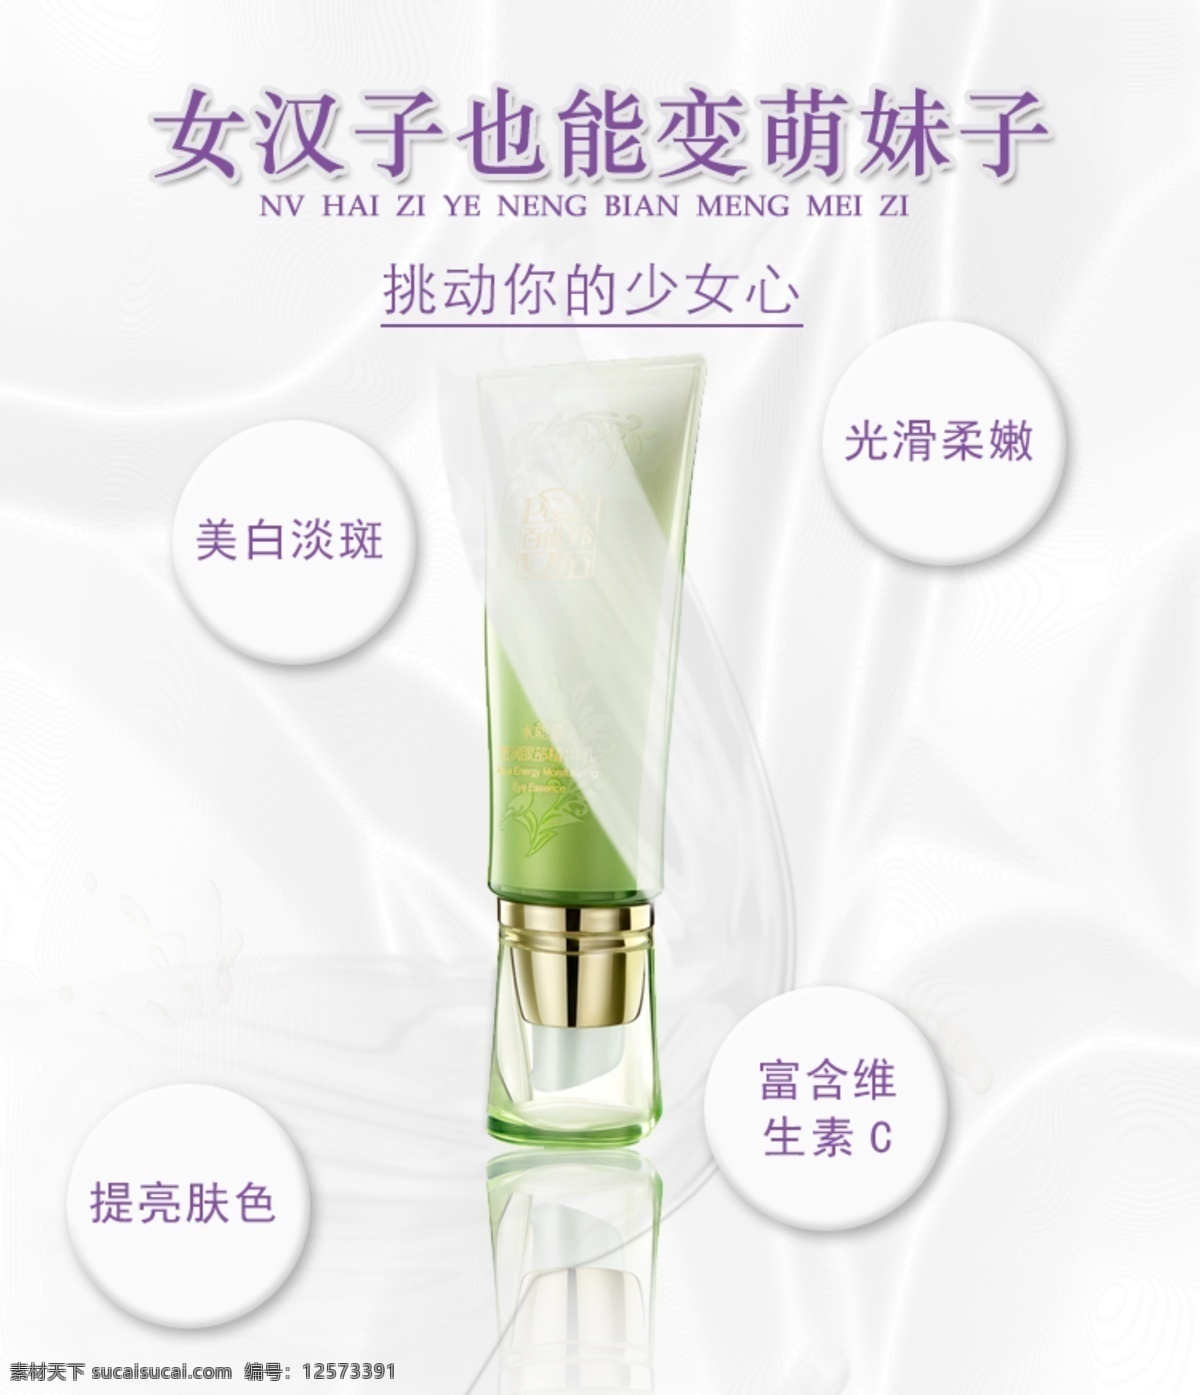 眼霜 宣传海报 设计素材 海报宣传 化妆品 美白亮肤 富含维生素